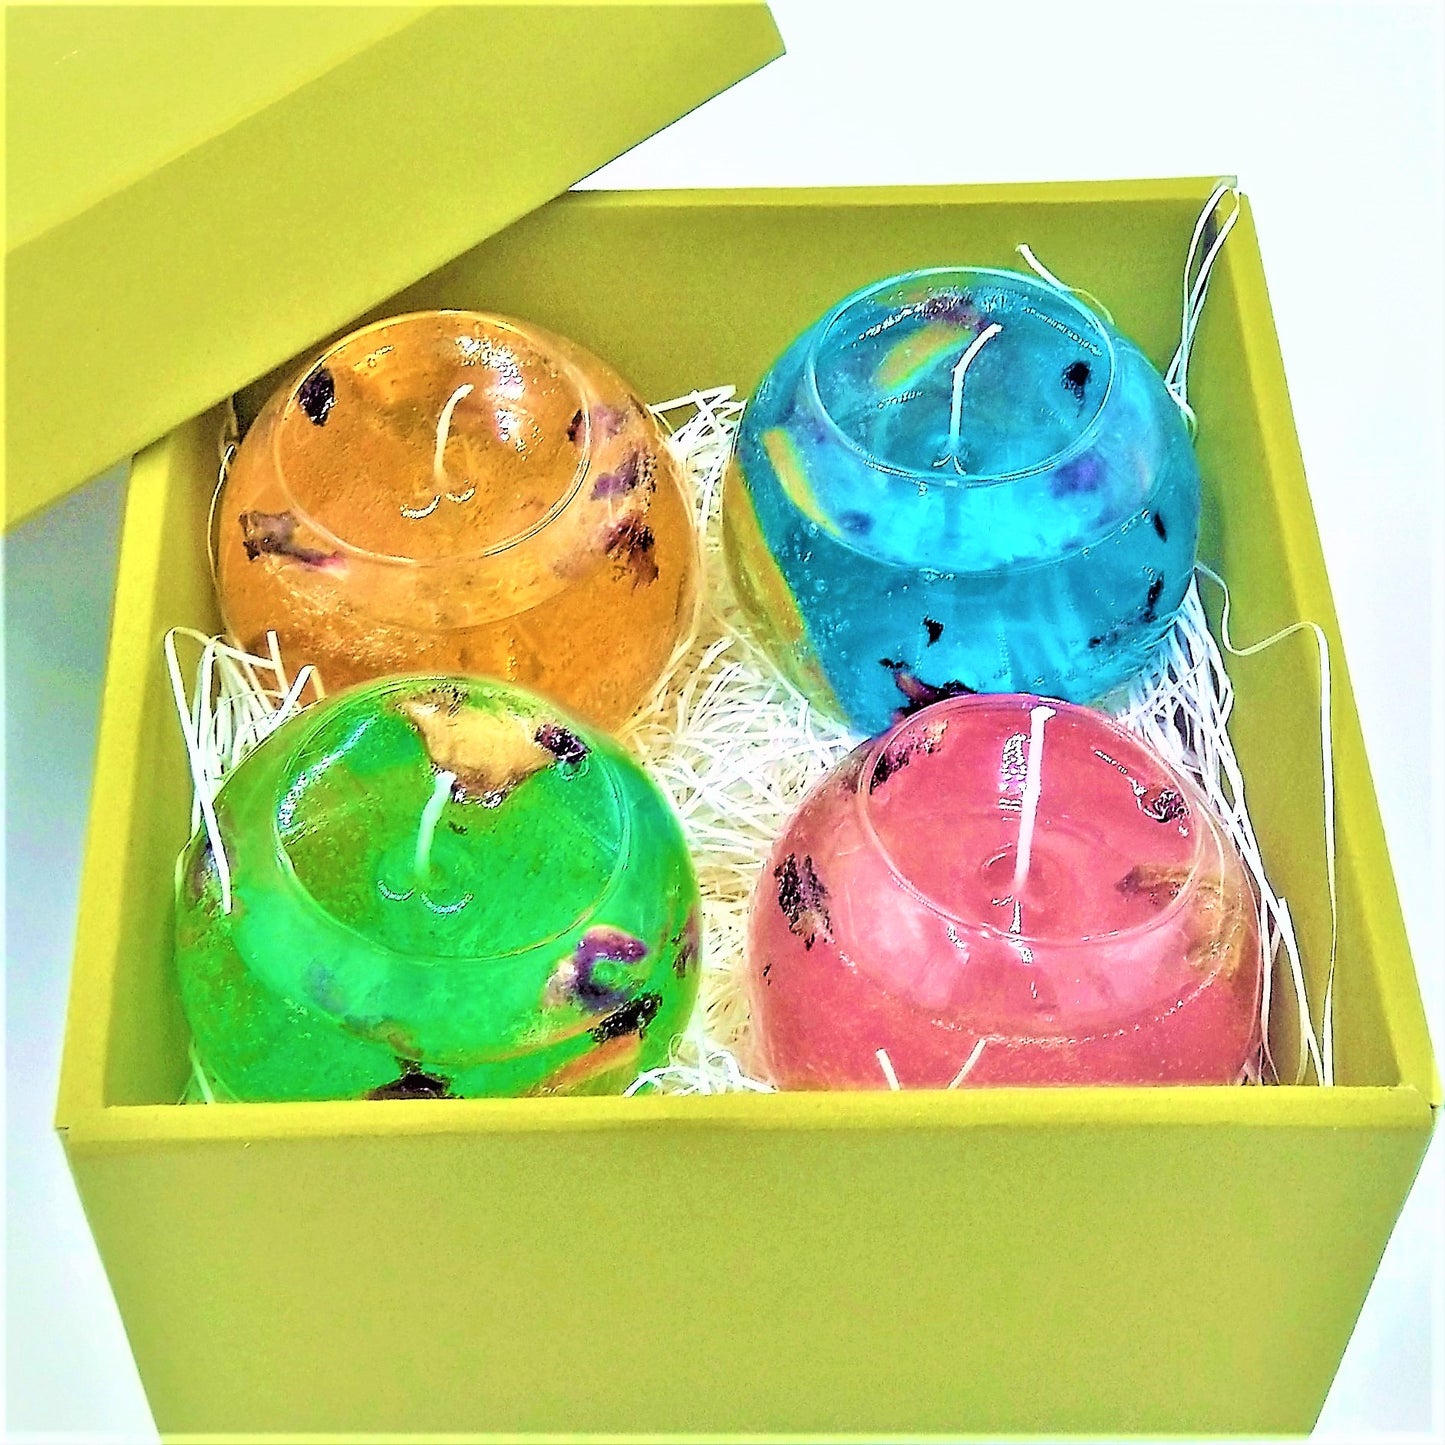 ジューシーゼリーキャンドルシリーズ 4個セット オーシャンブリーズ バブルメロンパンチ 他2点 限定ギフトボックス付き Juicy Jelly Candle Series Set of 4 with Limited Gift Box